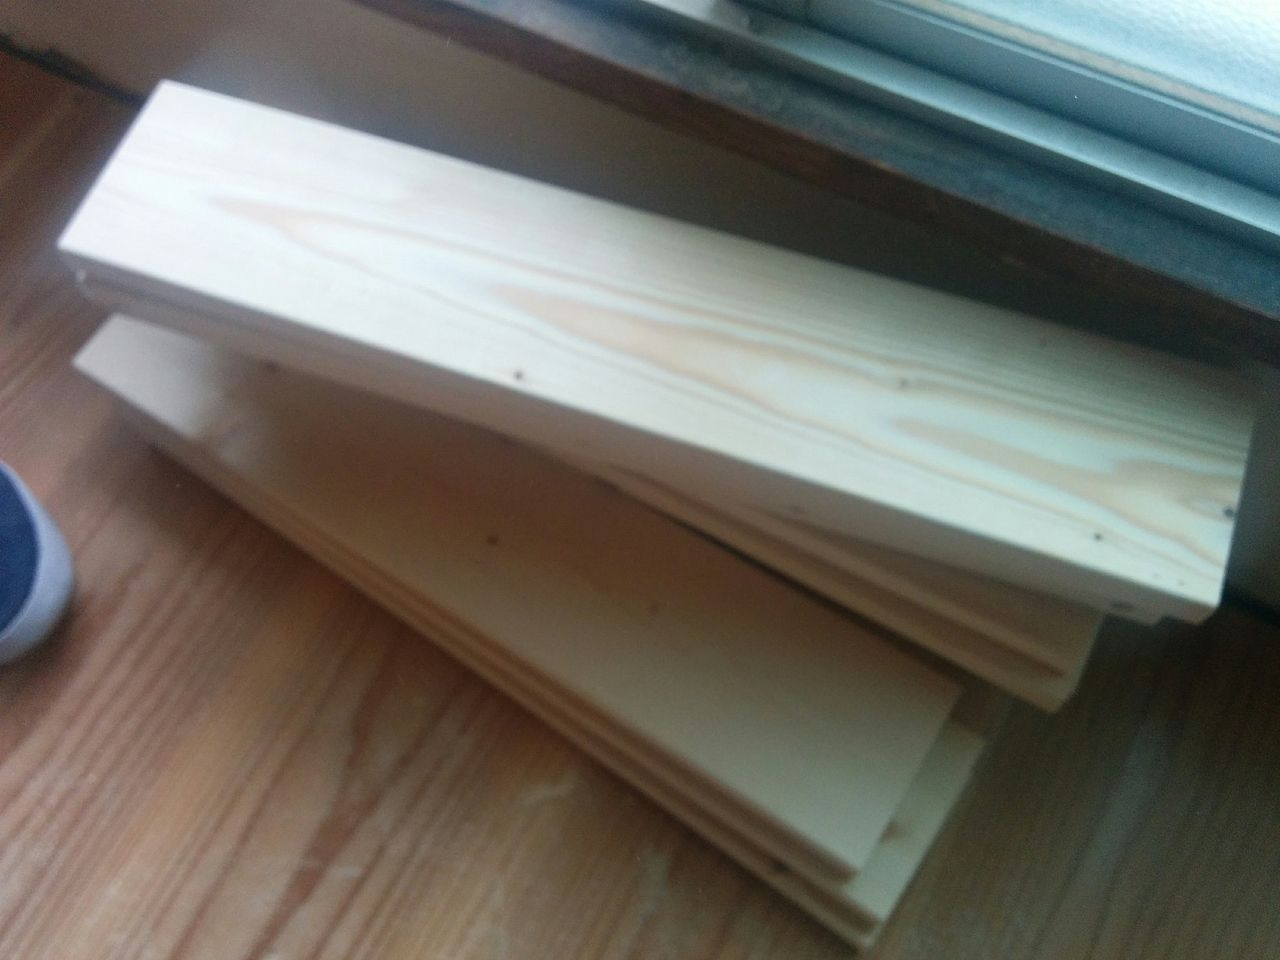 木材に墨出しをして、ひたすら木材をカットしていきます。
2×4材は天井高よりも少し低いぐらいでカットし、1×4材は約1,800mmあるモノを4等分にカットします。
この作業はかなりの量の木材をカットするので、電動工具である丸ノコの使用をおススメします。